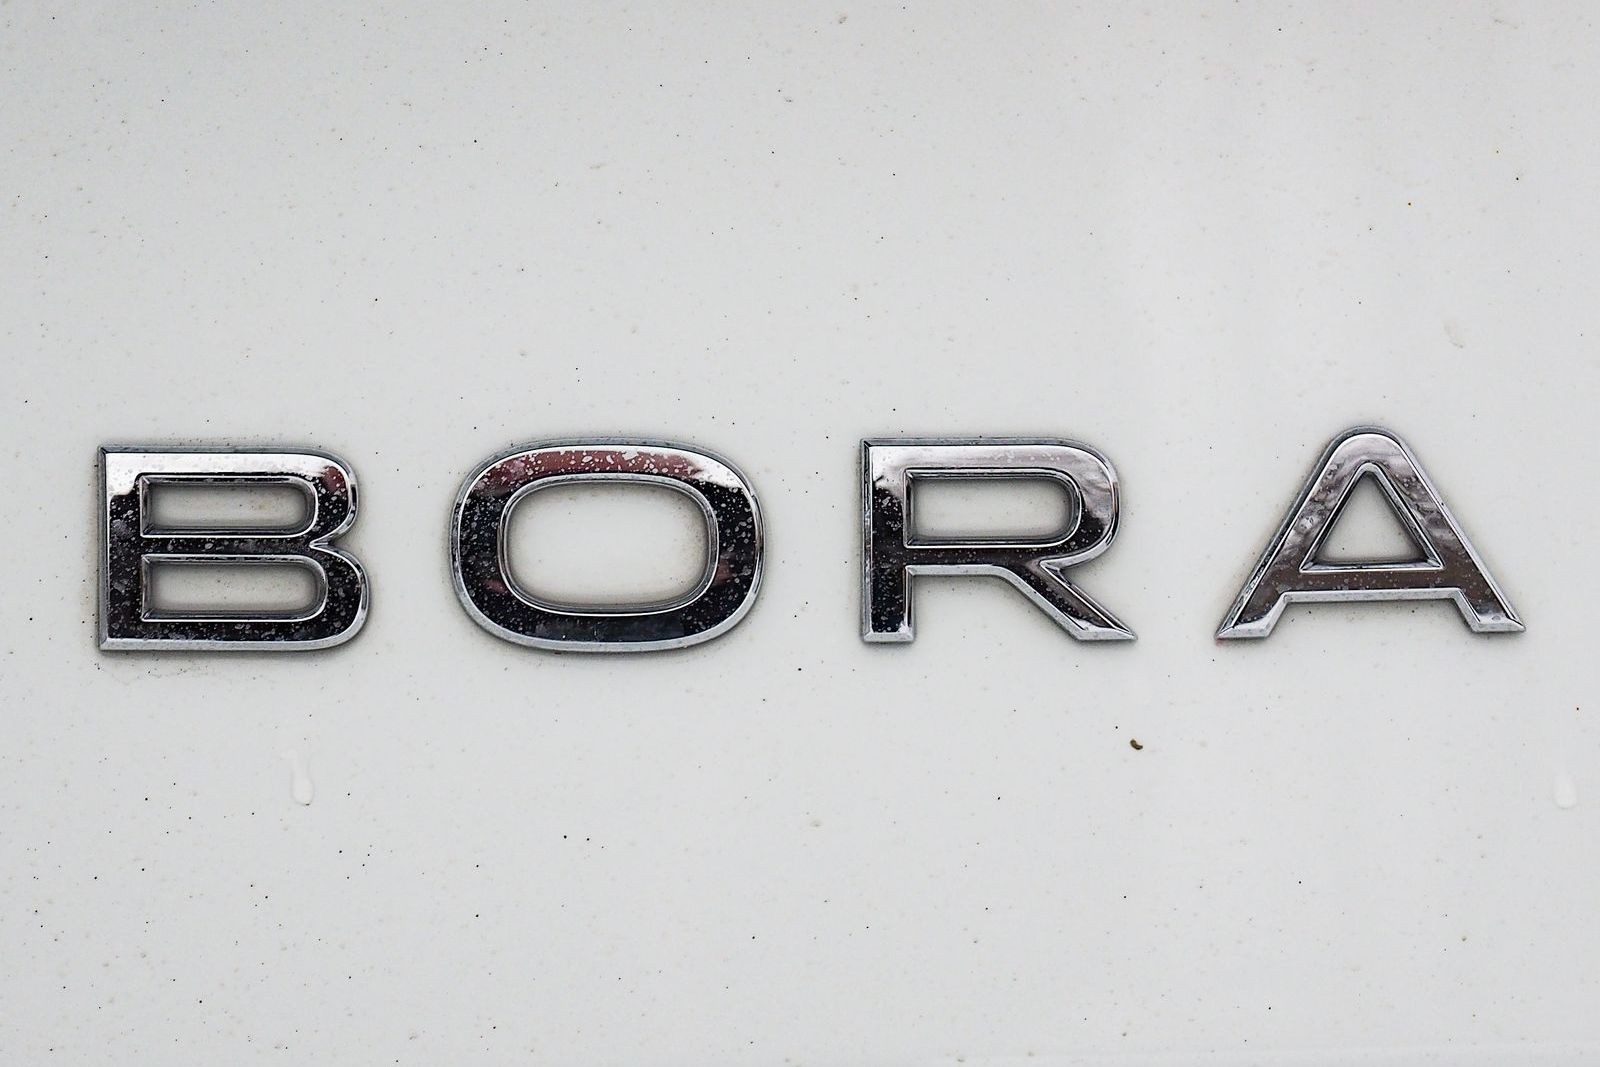 Автомат, атмосферник и низкая крыша: тест-драйв Volkswagen Bora